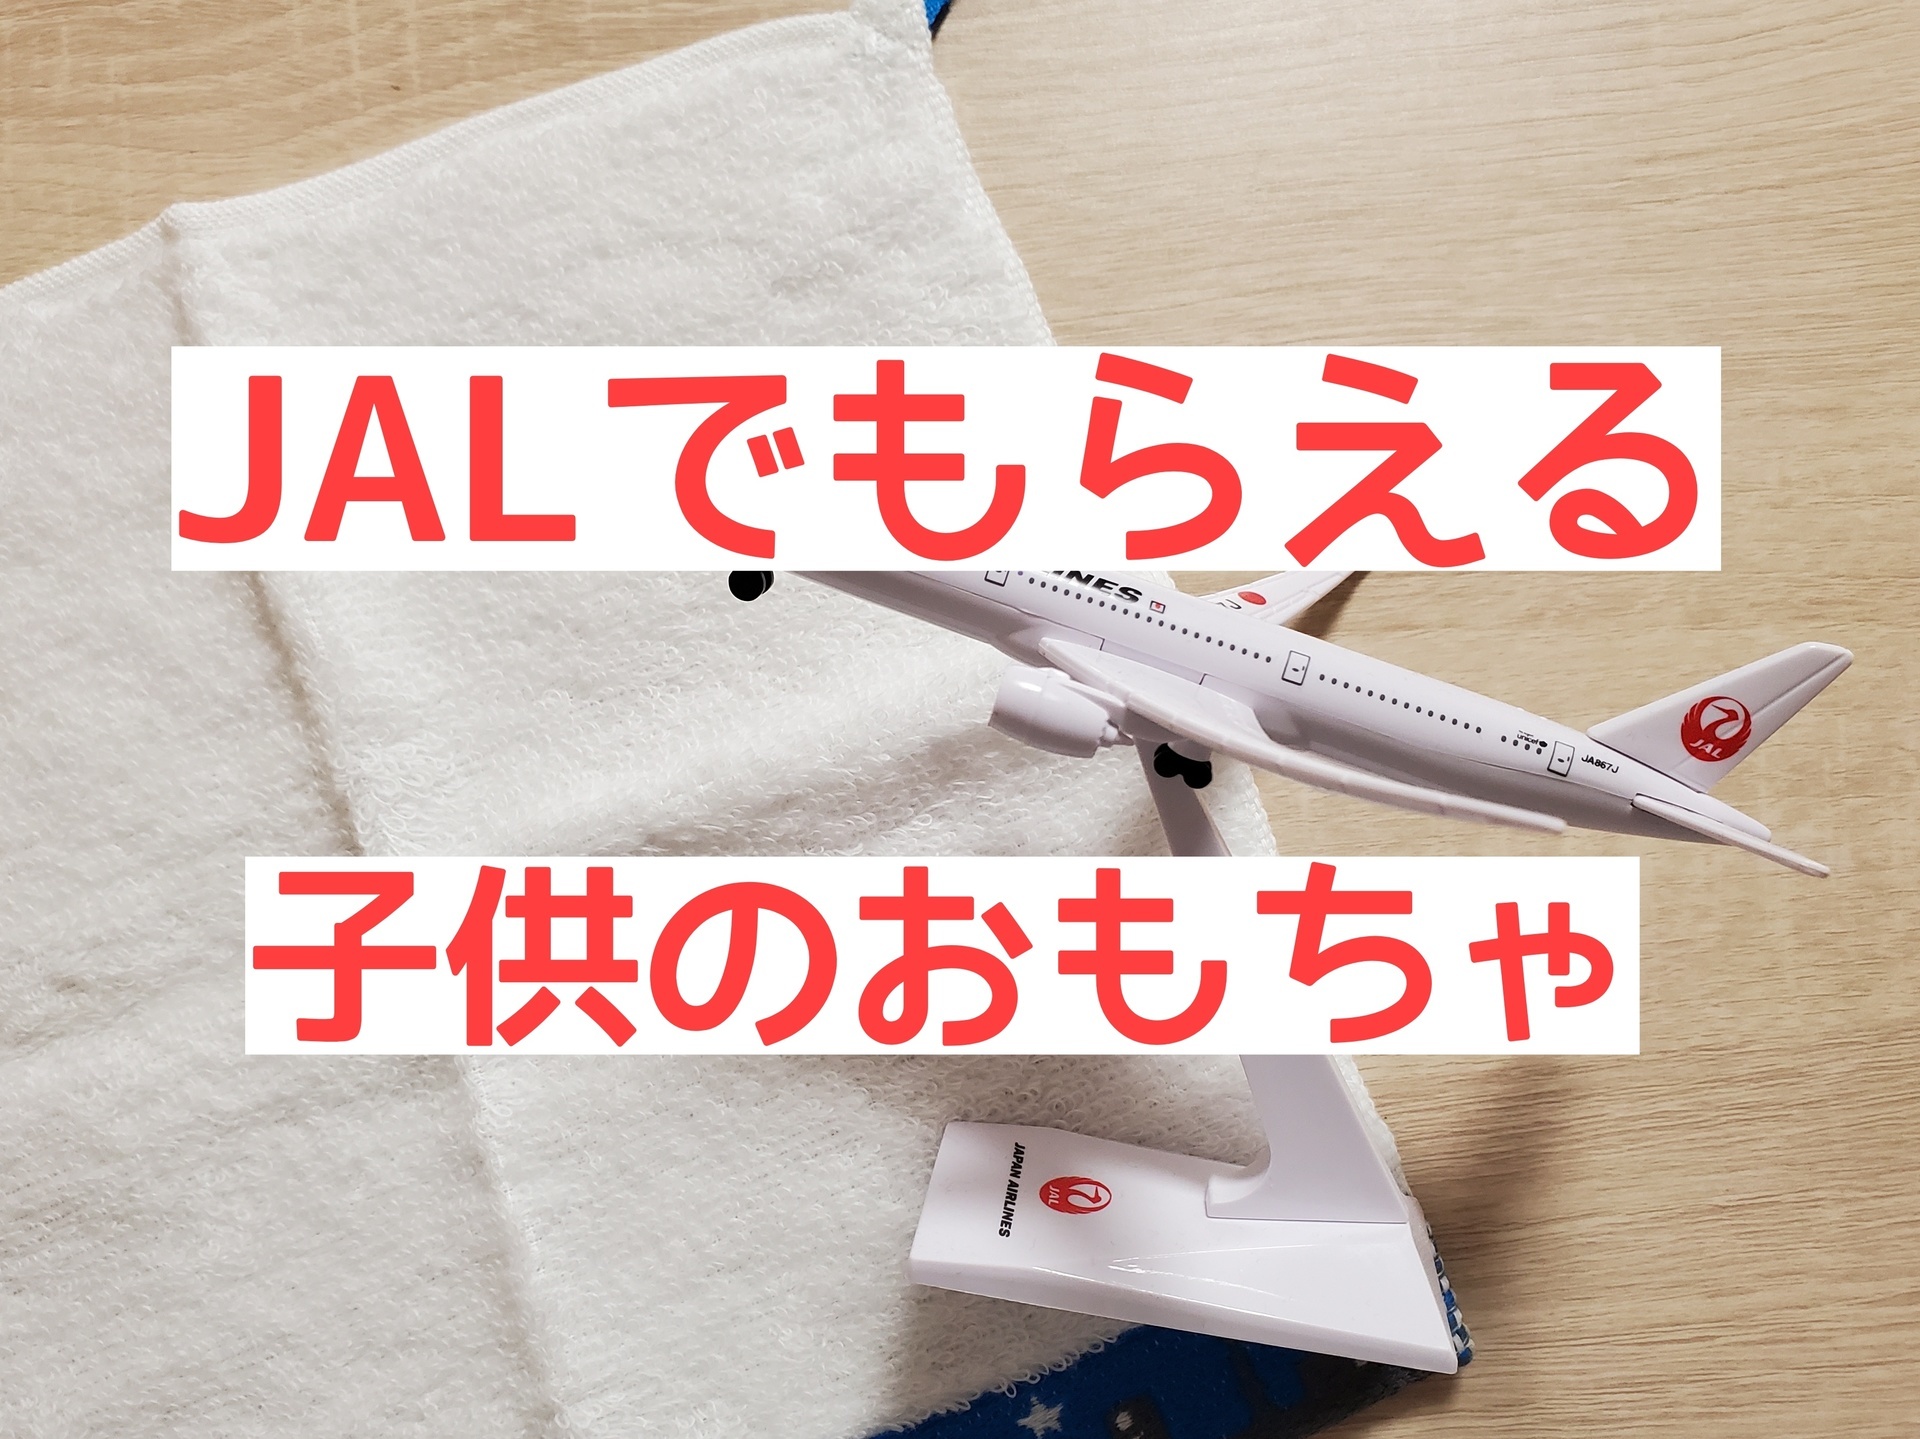 JAL 機内 おもちゃ ノベルティ - 航空機